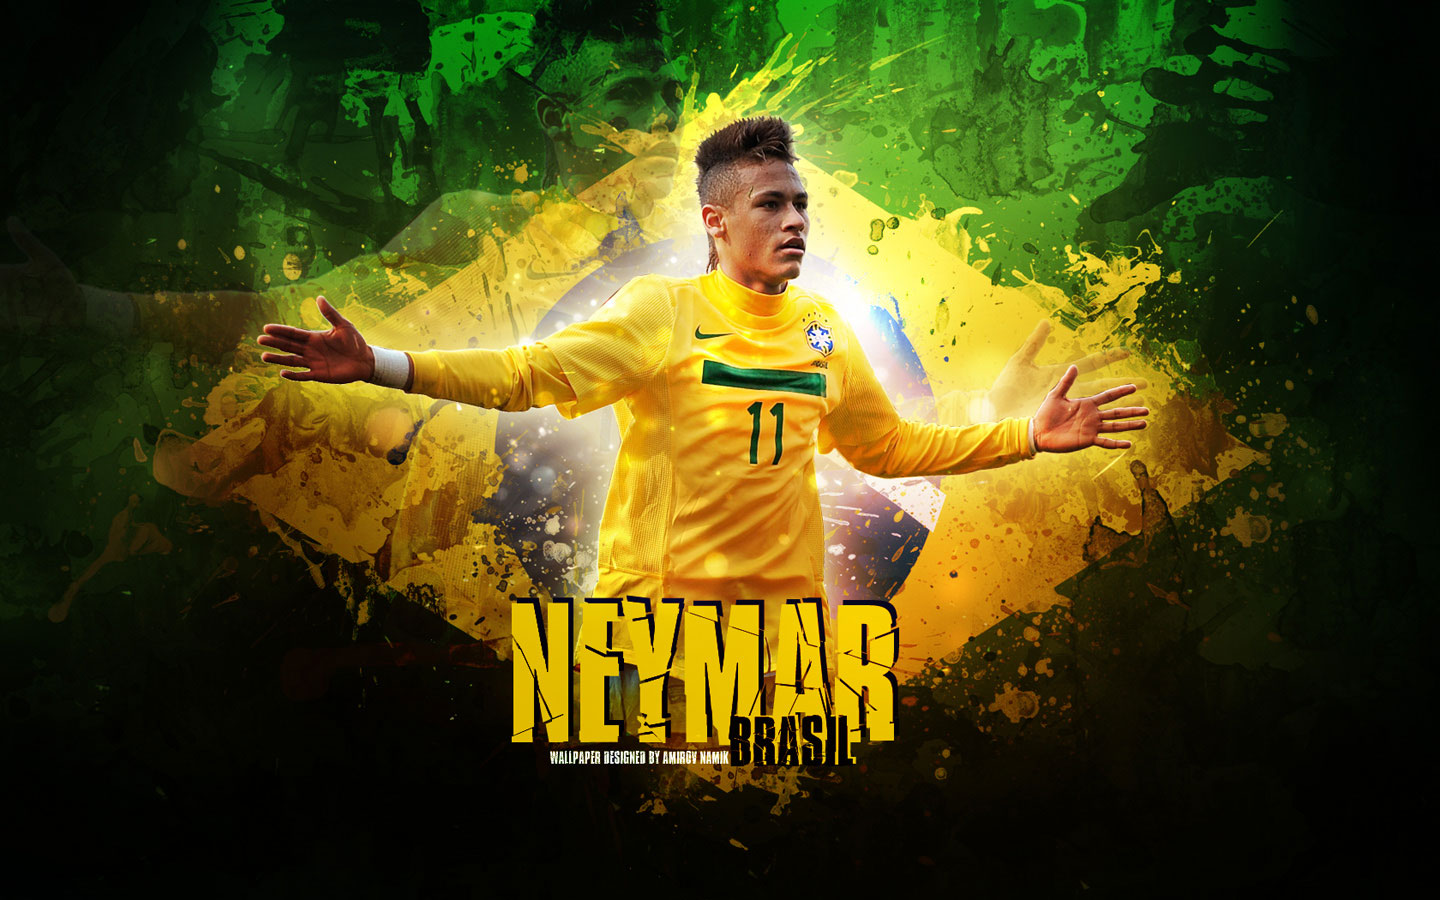 Màn hình của bạn sẽ ngắm được vẻ đẹp và niềm tự hào của Neymar thông qua những hình nền độc đáo. Trân trọng tài năng và đam mê của siêu sao bóng đá này với một chút sáng tạo từ Neymar wallpaper.